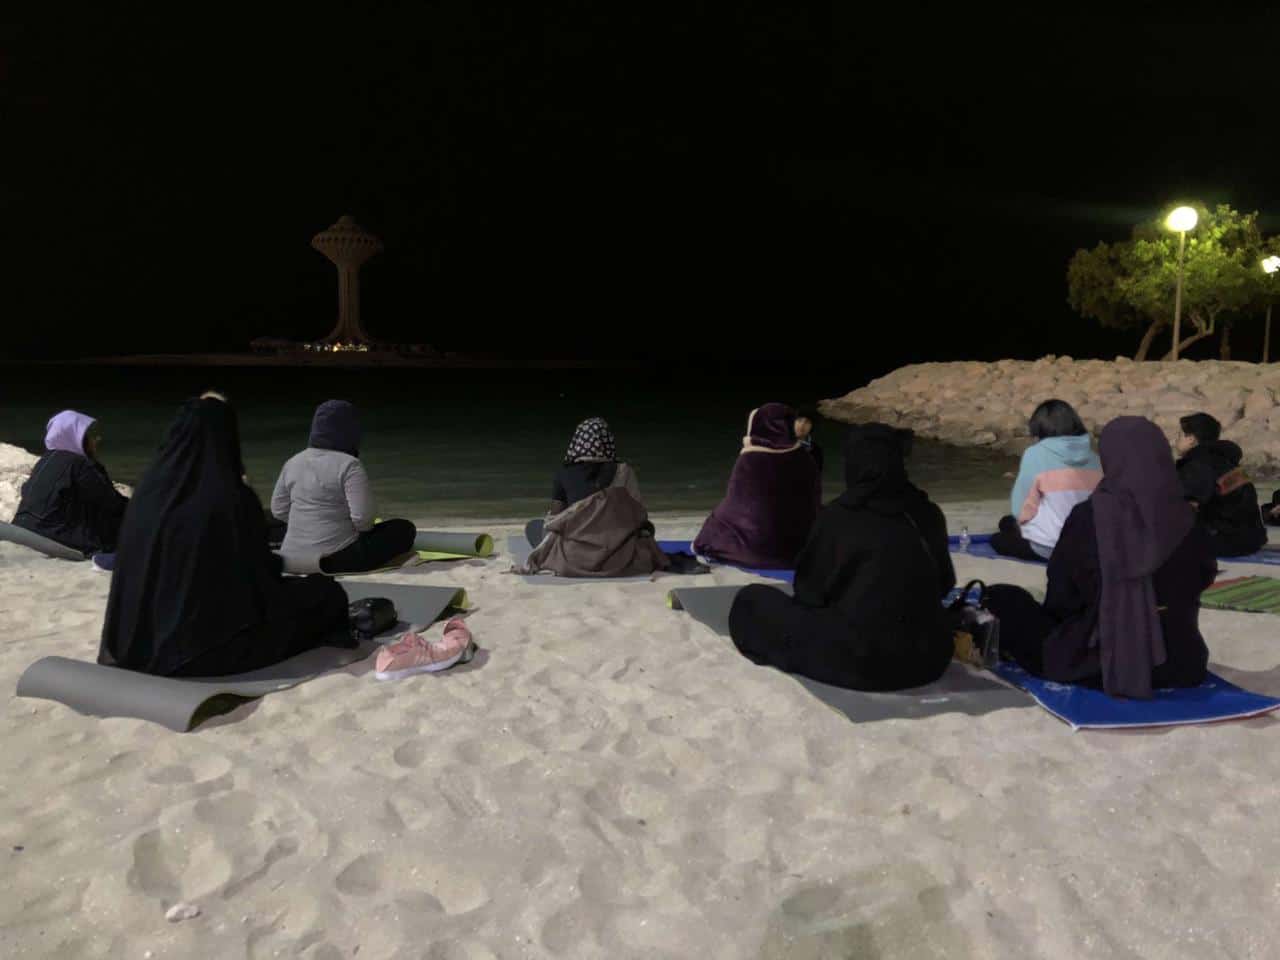 اليوغا على البحر...خيار فتيات سعوديات للتخلص من السلبية